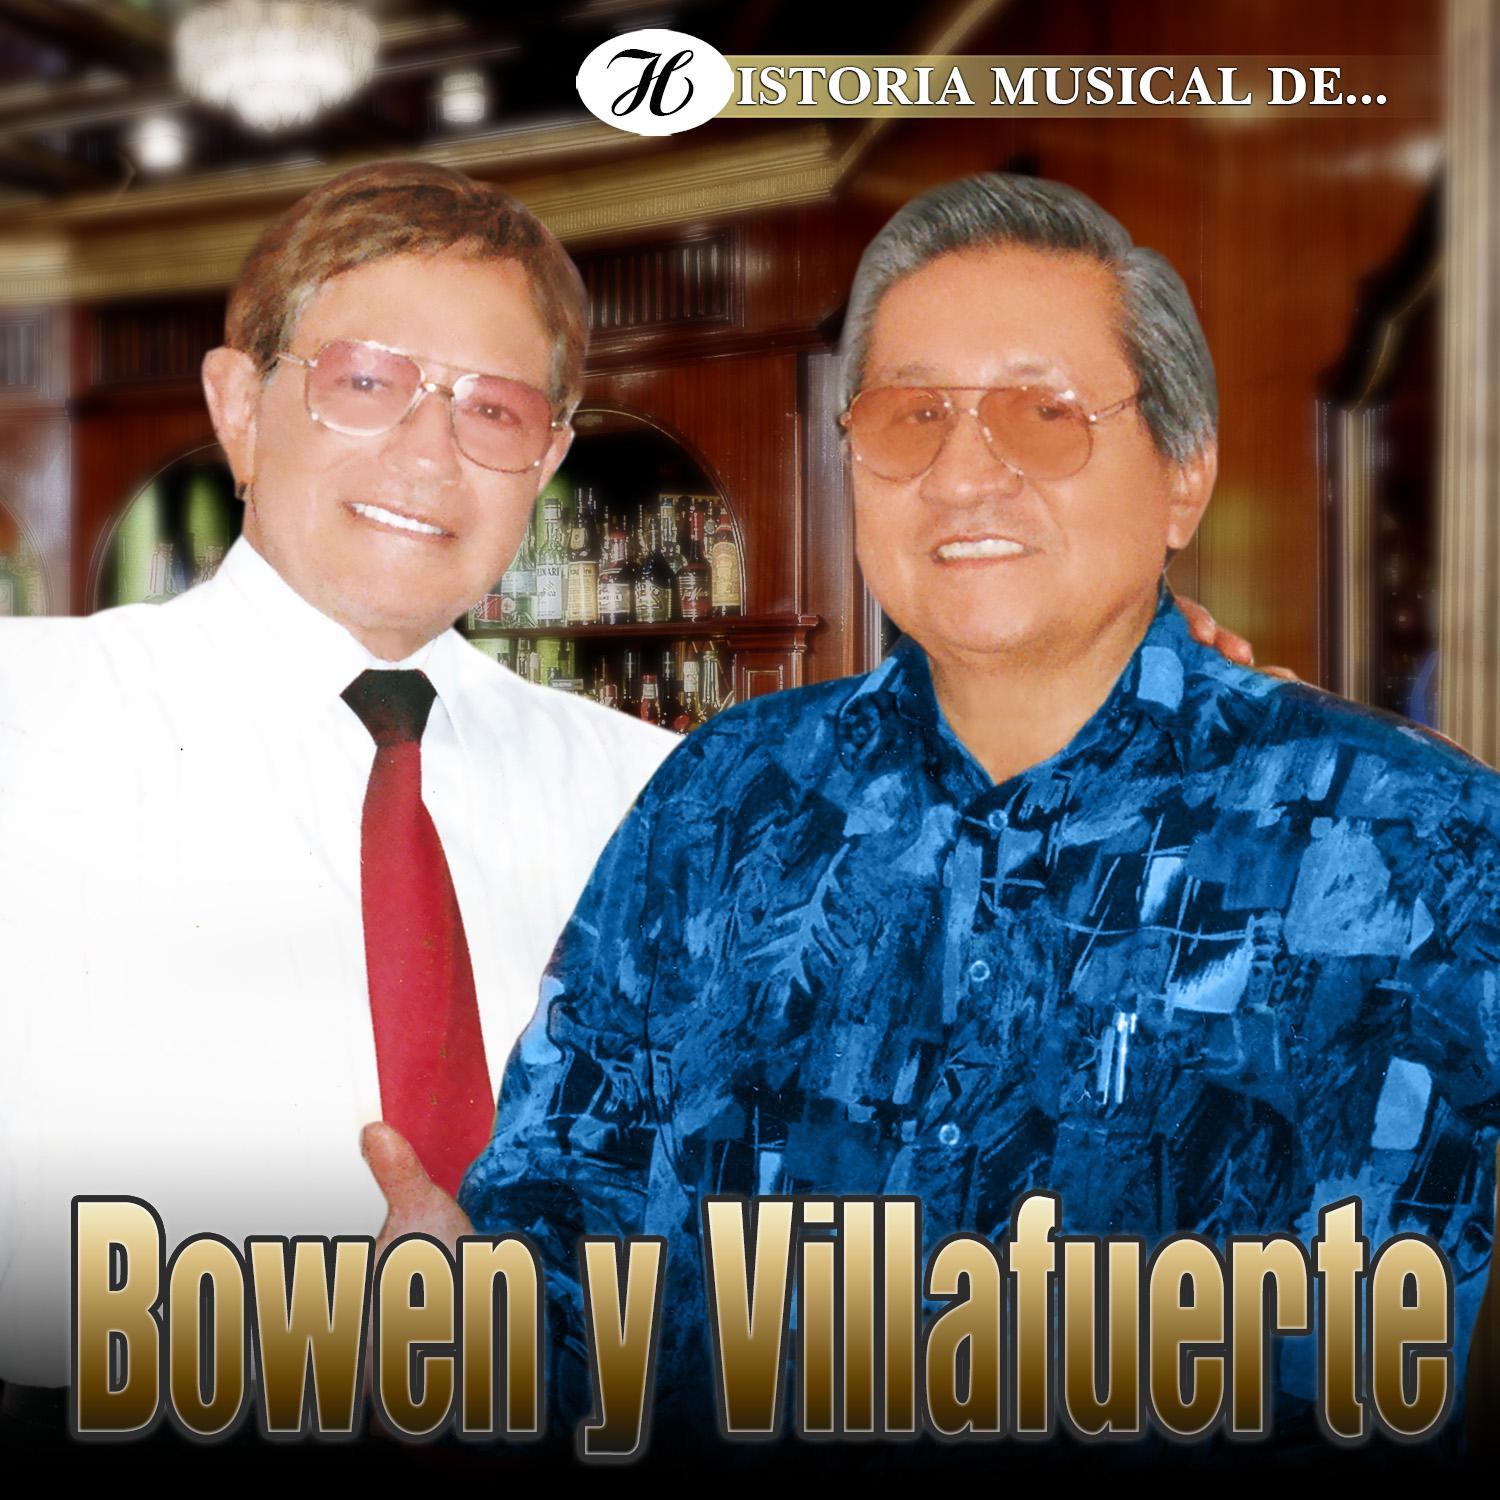 Historia Musical de Bowen y Villafuerte